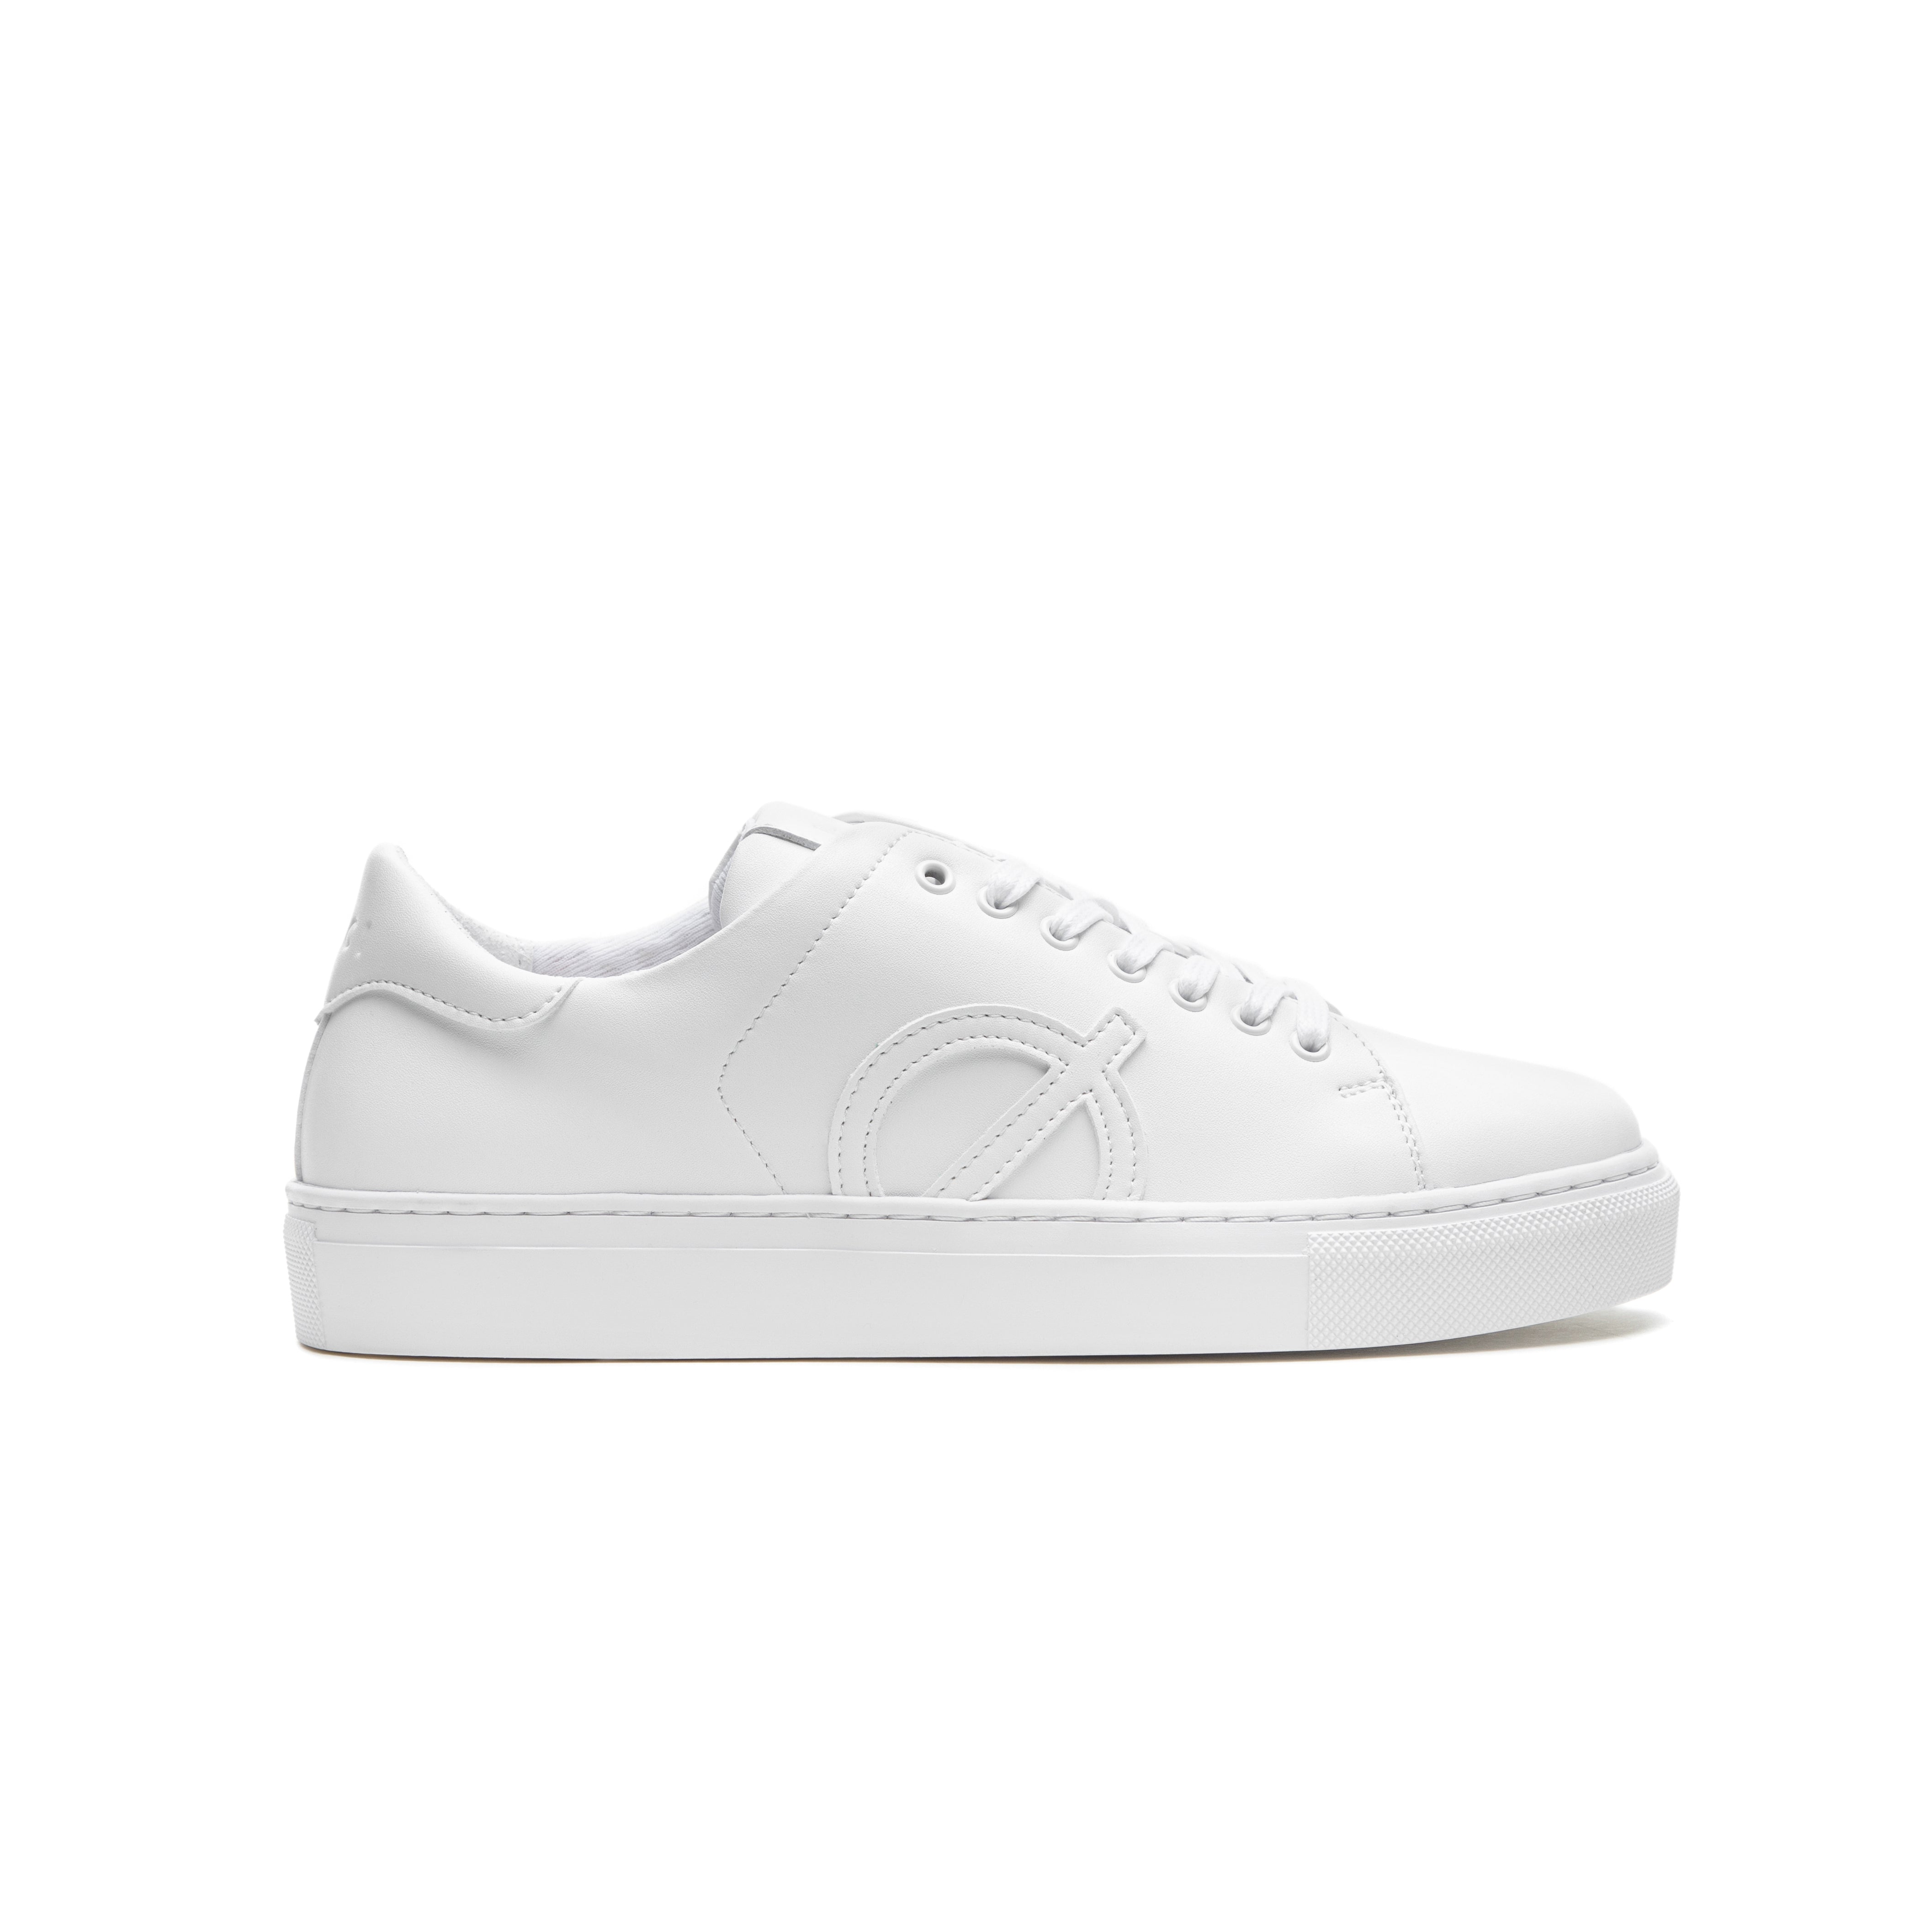 Loci Origin Sneaker White/White 3 